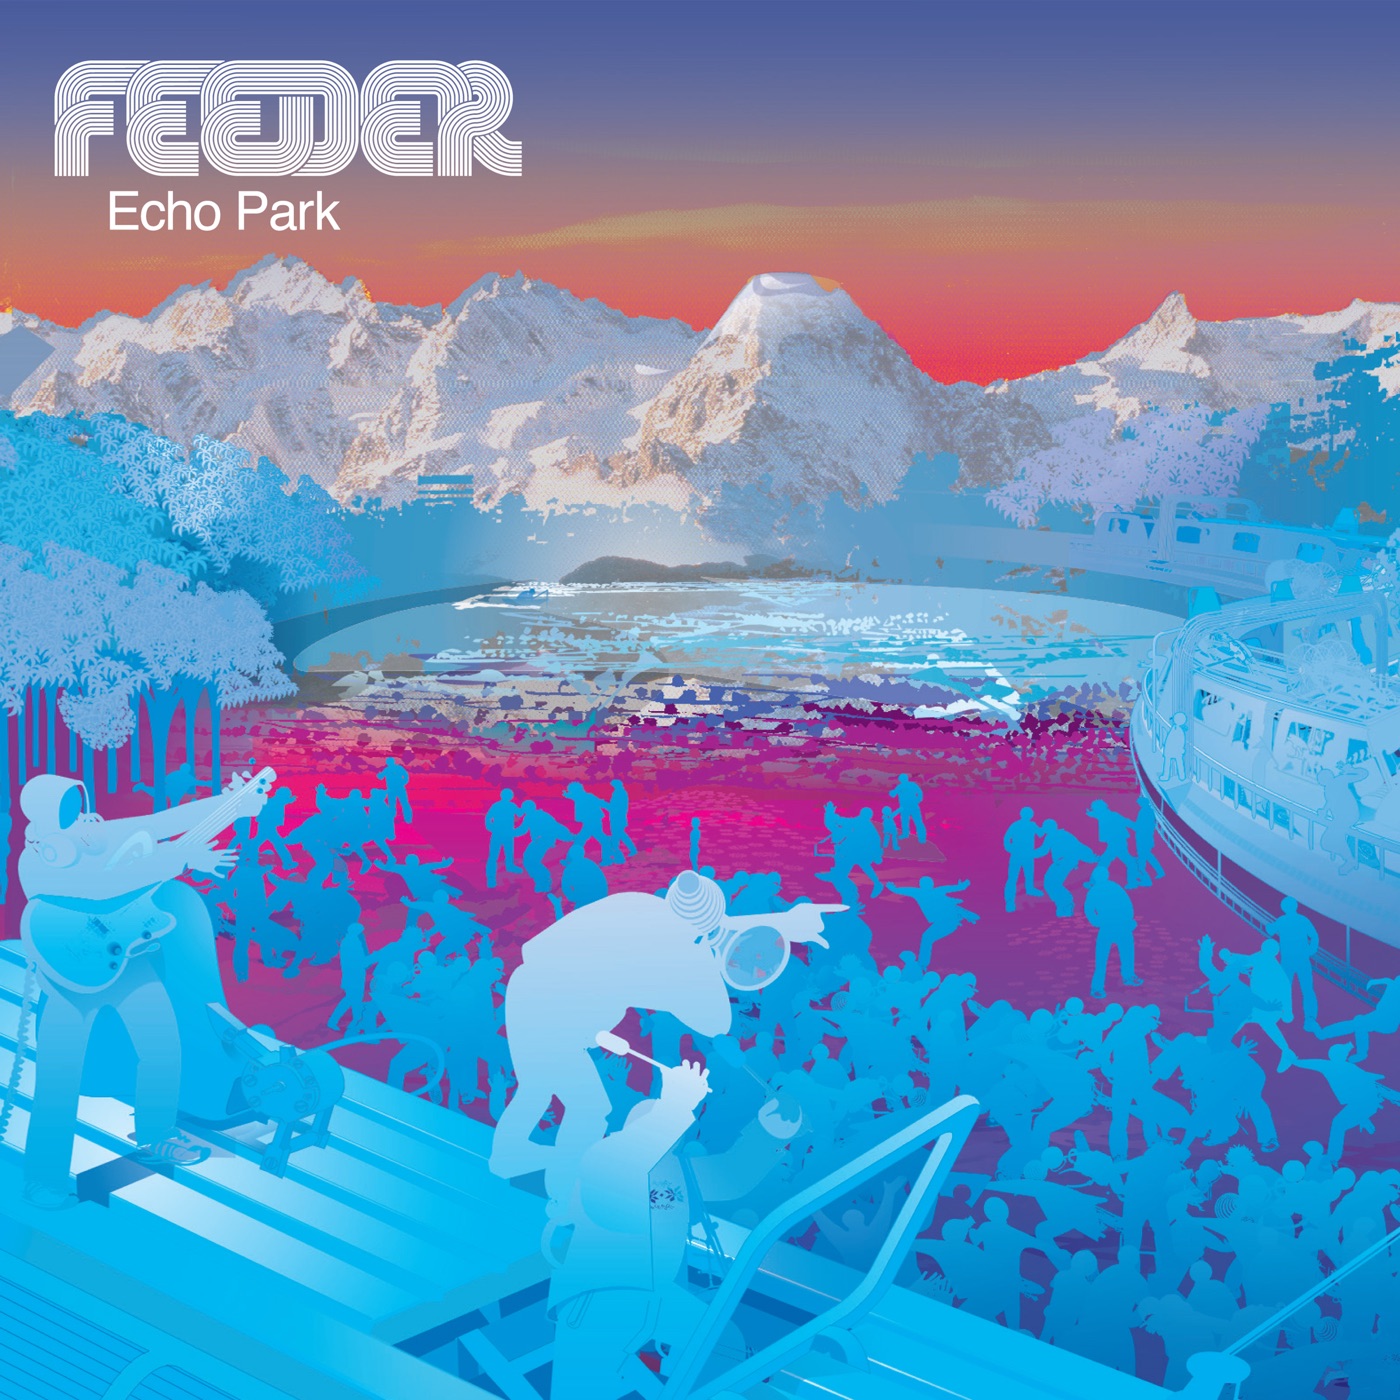 Echo Park by Feeder